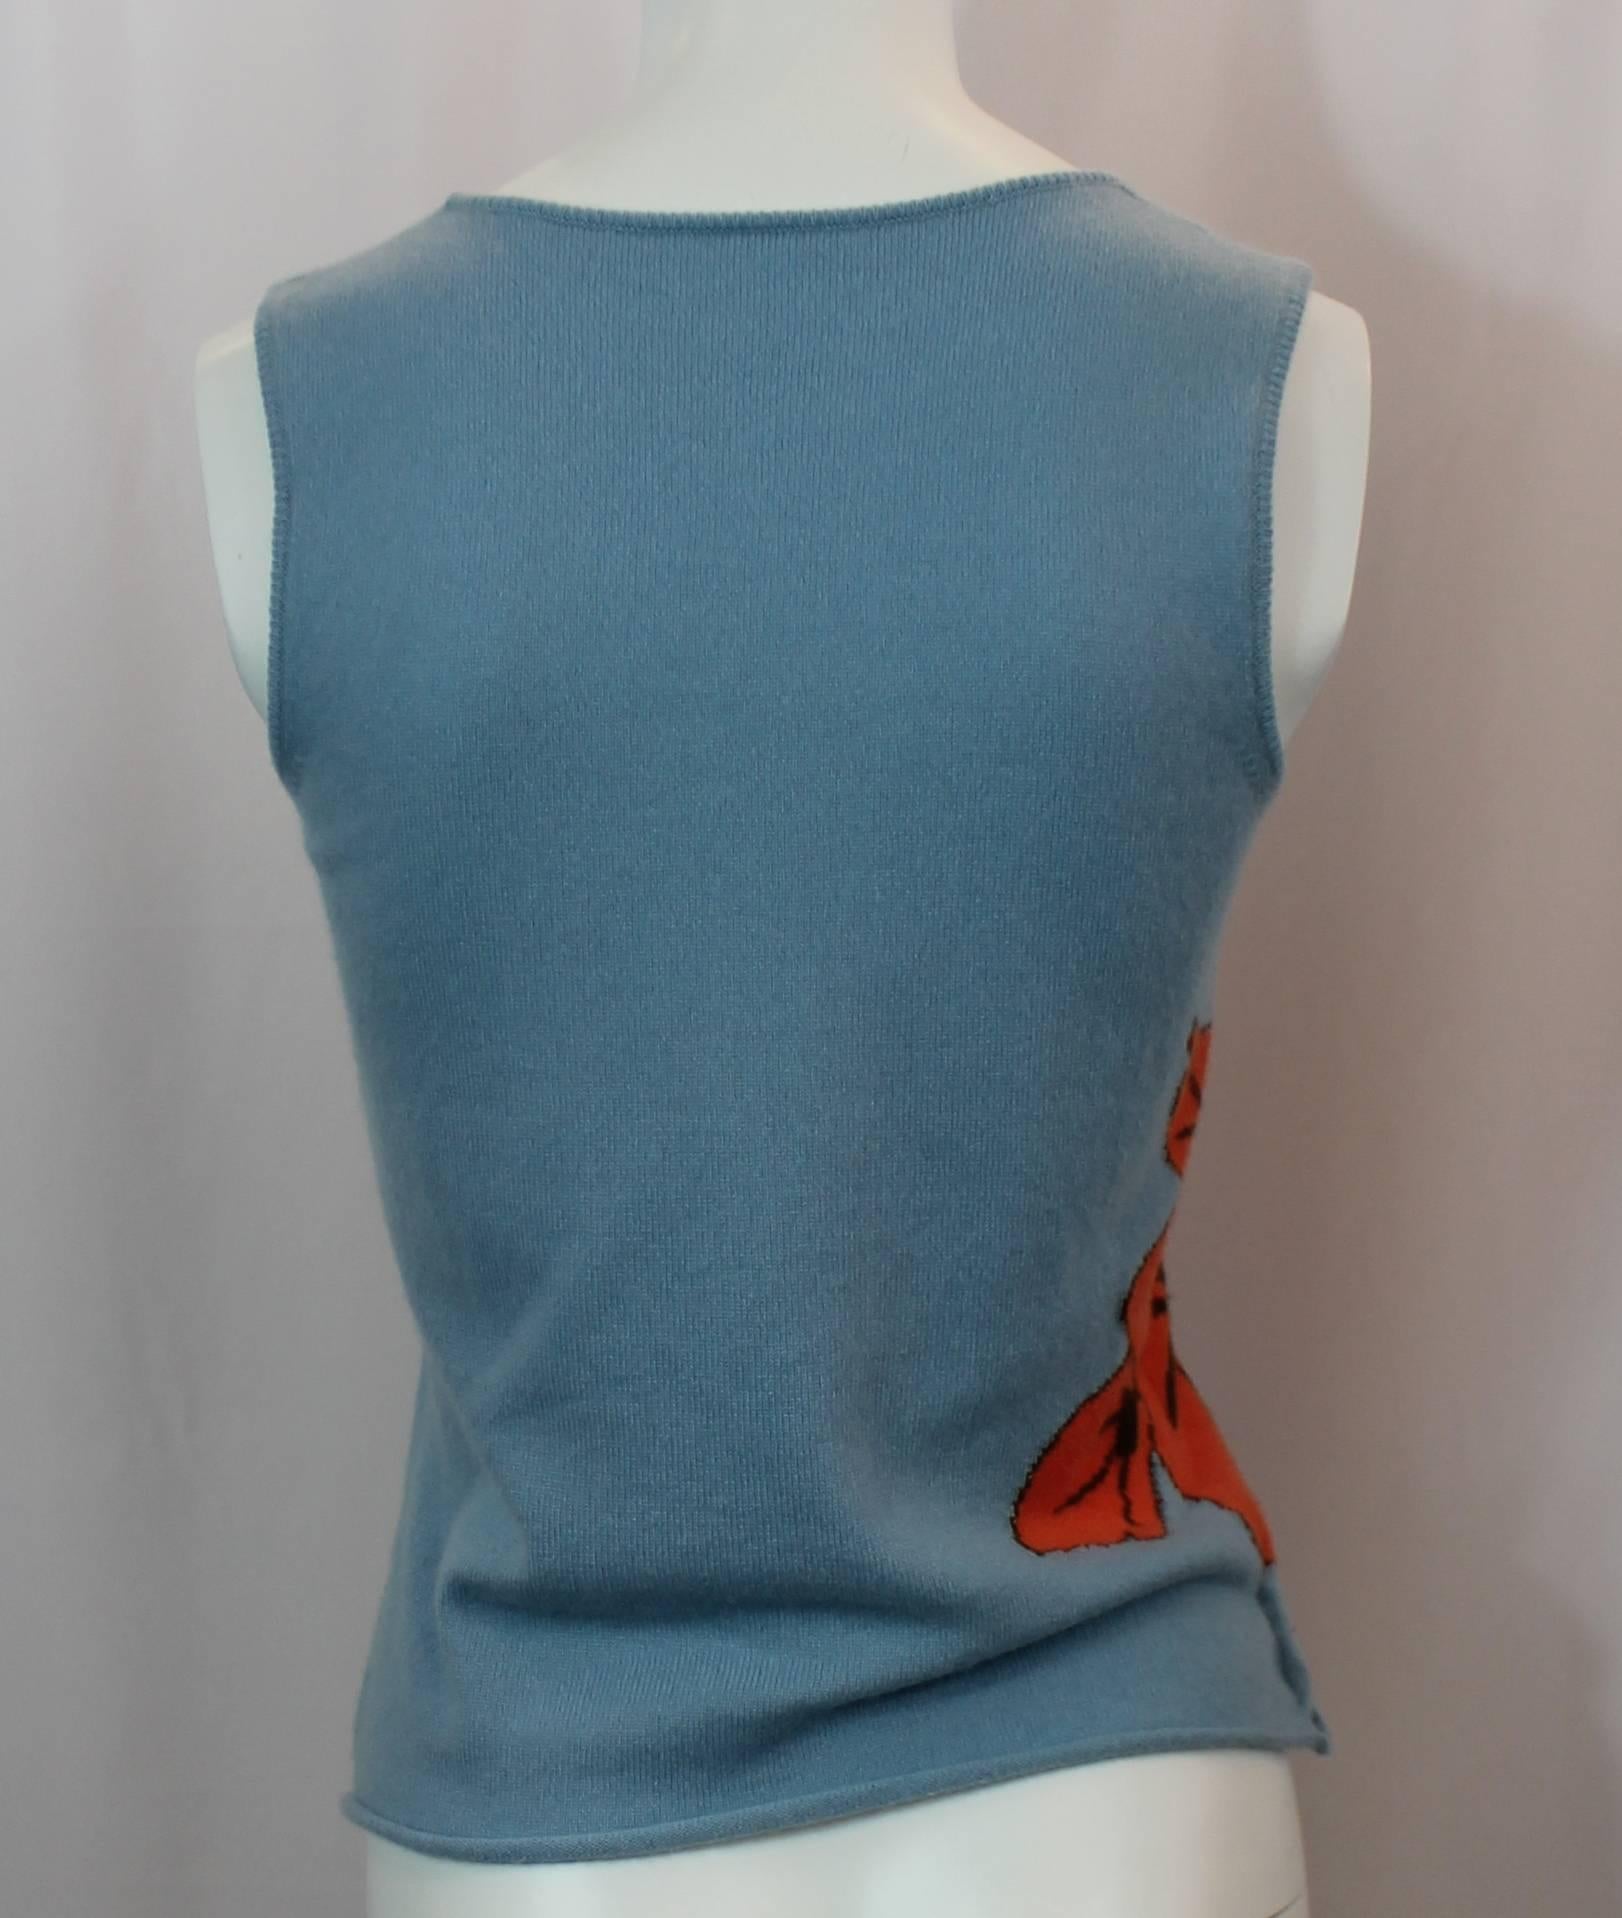 Women's Lucien Pellat-Finet Sleeveless Blue Tropical Print Cashmere Top - S